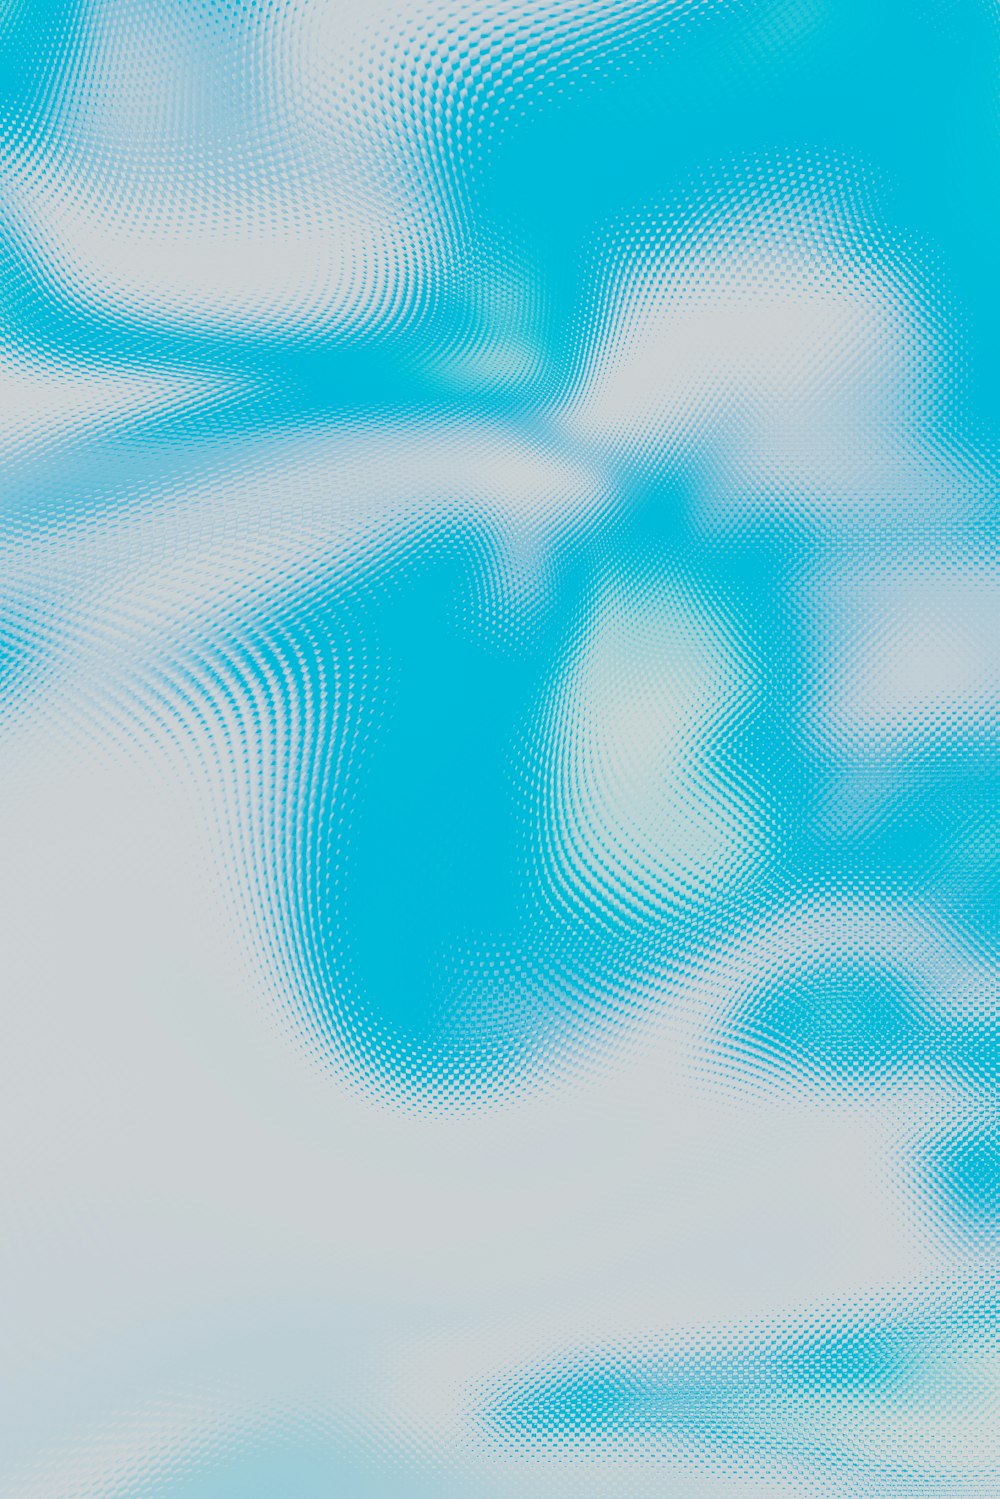 uma imagem borrada de um céu azul com nuvens